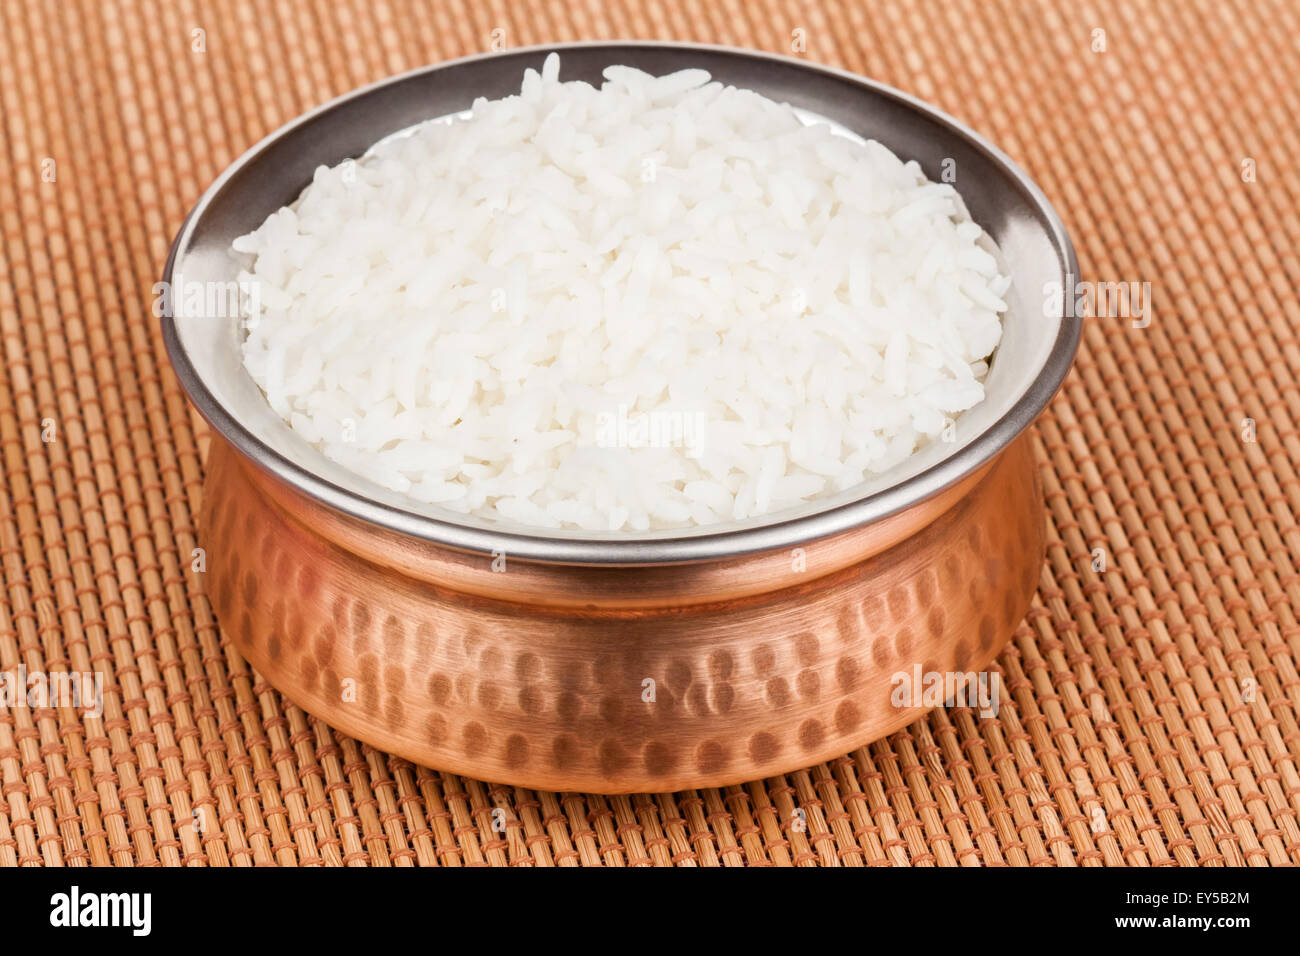 Le riz cuit servi dans un bol en cuivre authentique. Banque D'Images